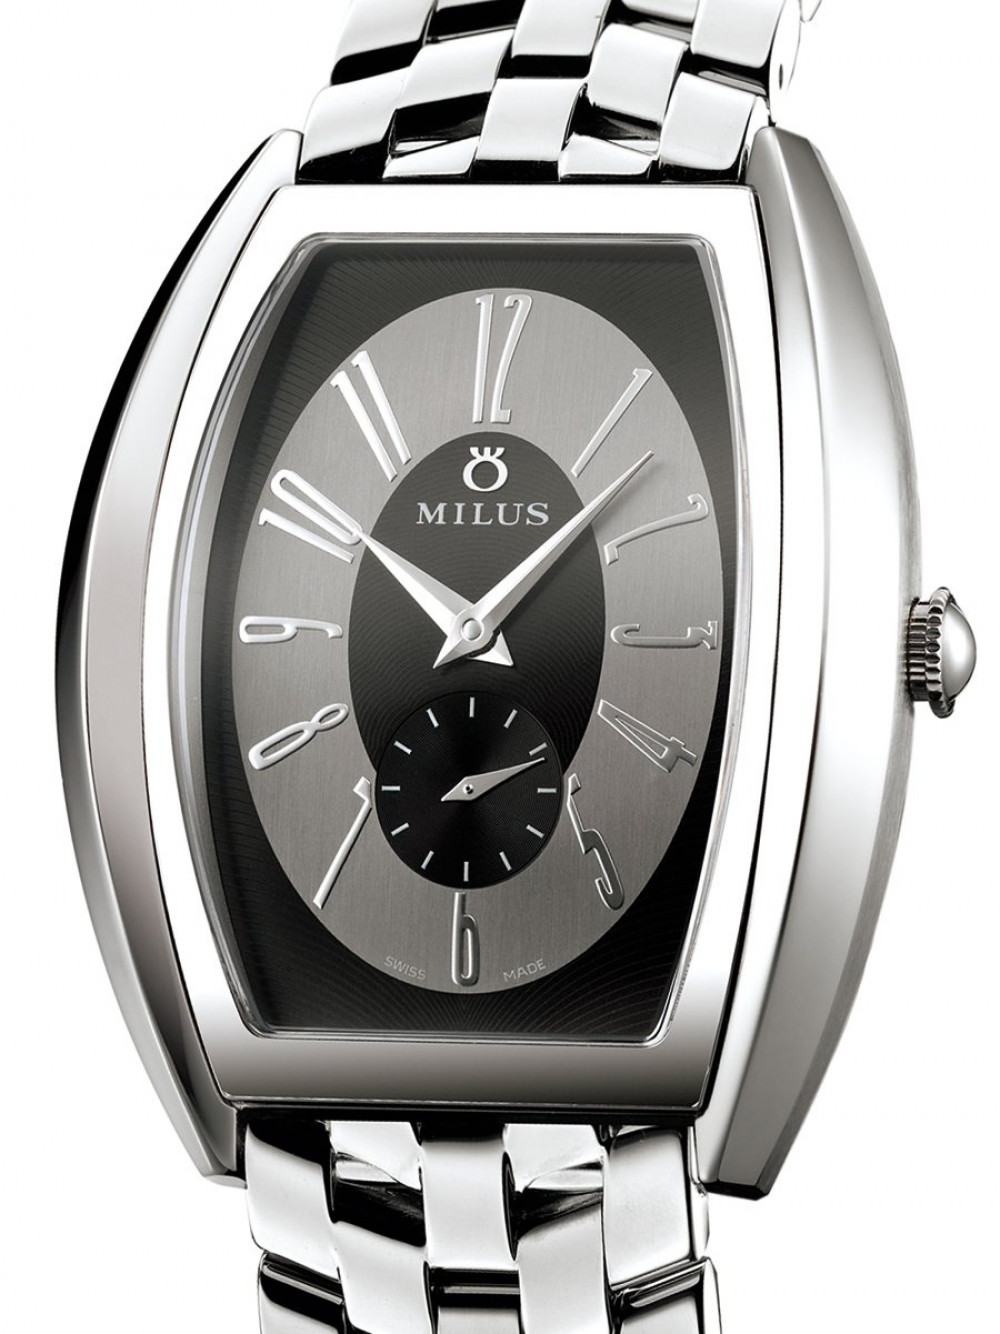 Zegarek firmy Milus, model Agenios Edelstahl